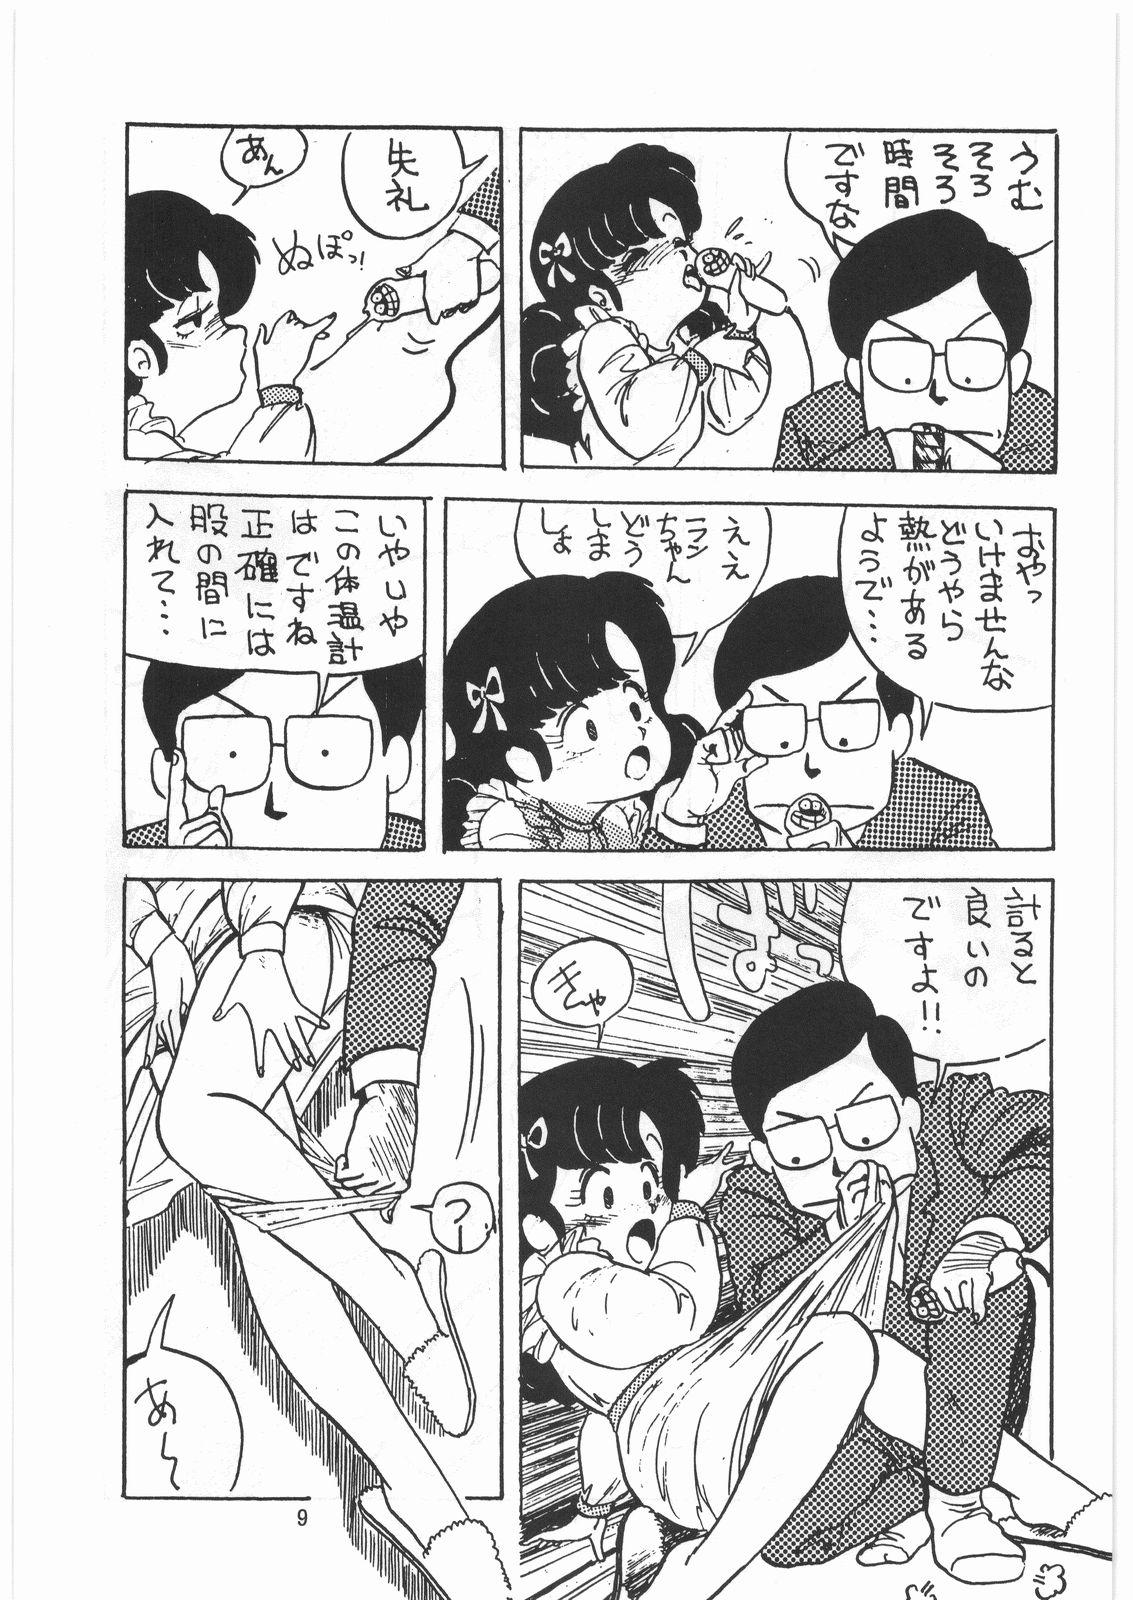 Oriental Tororoimo Densetsu - Ten no Maki - Urusei yatsura Maison ikkoku Magical emi Creamy mami Fist of the north star Sasuga no sarutobi Redhead - Page 8